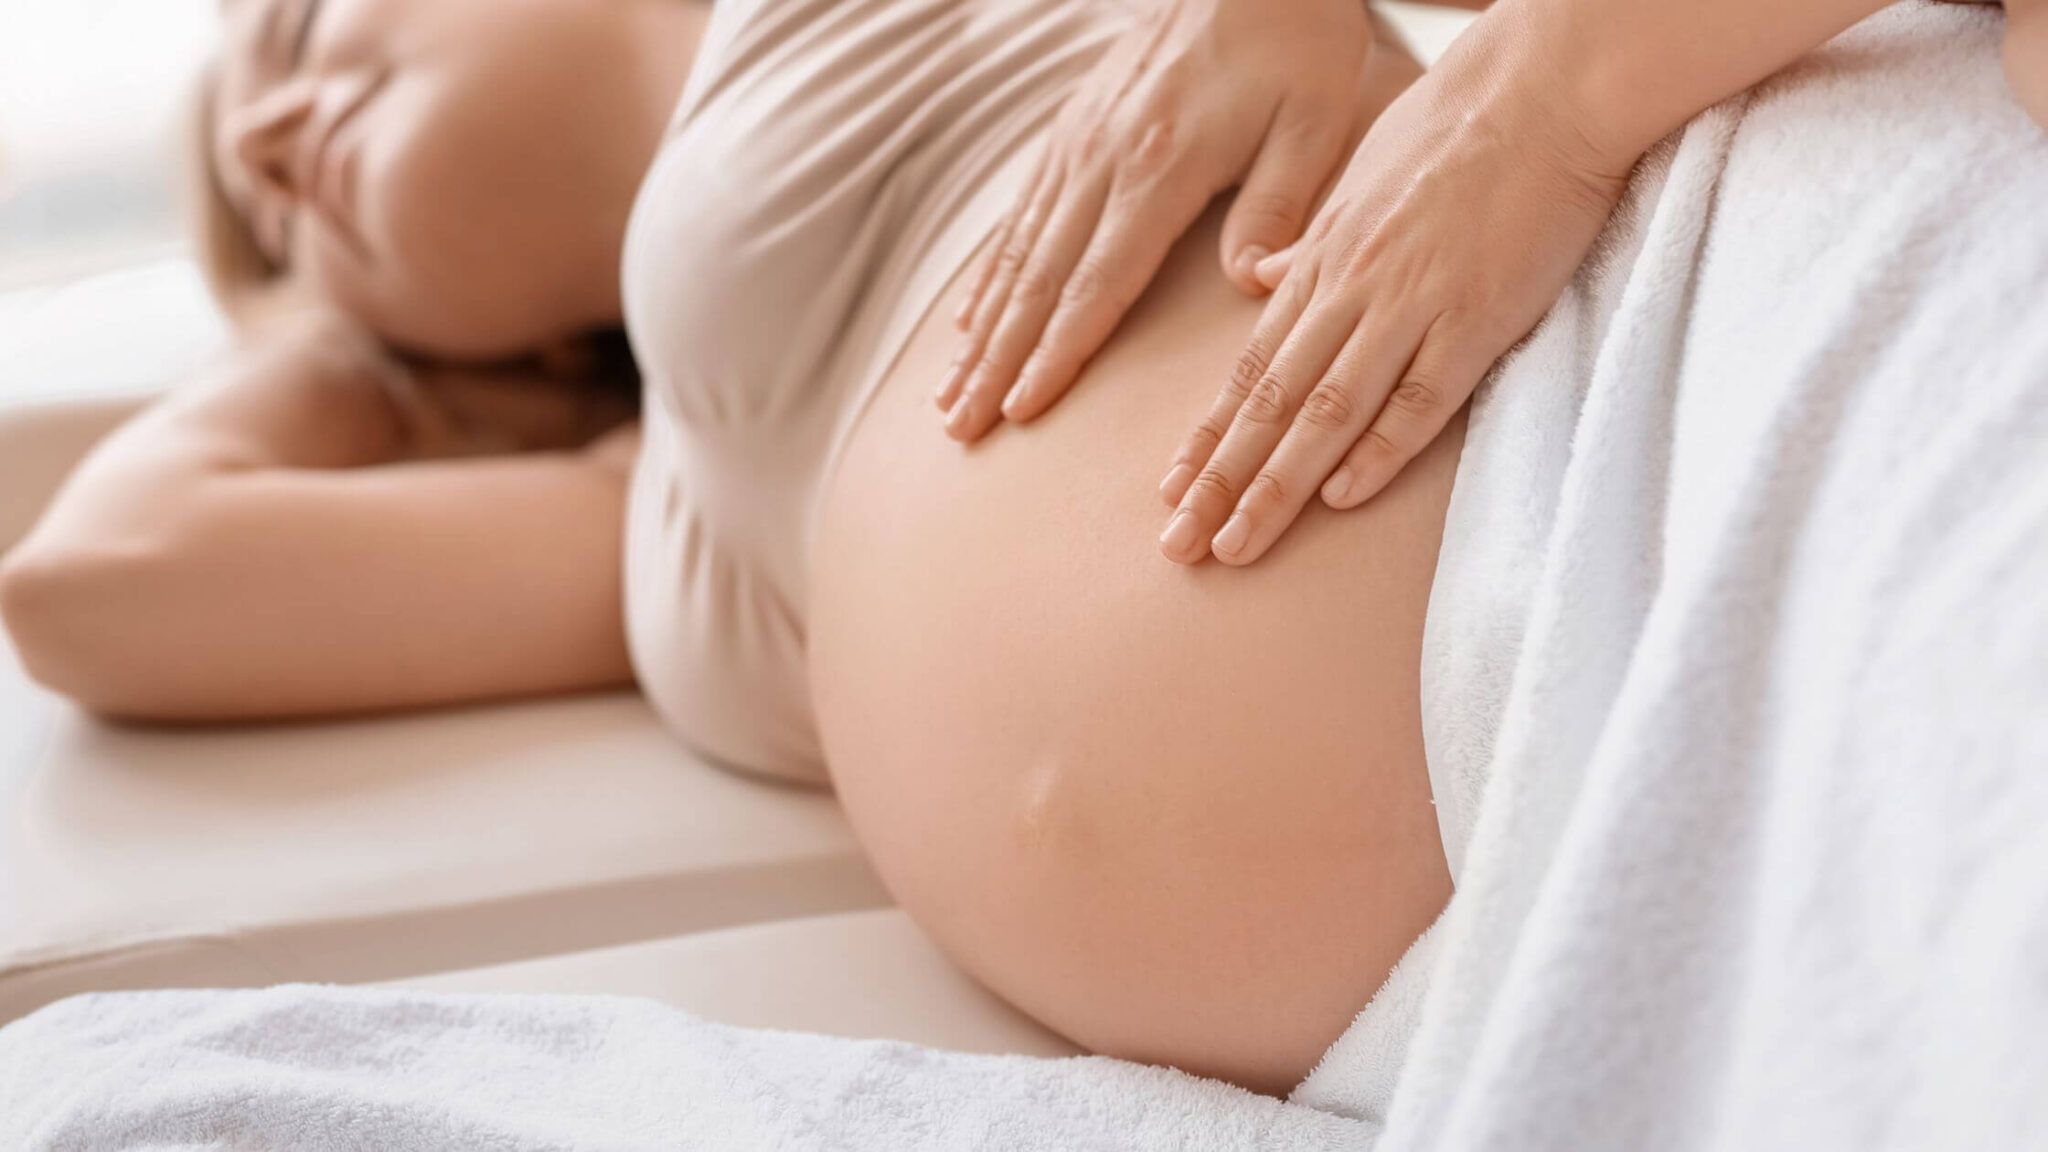 Fisioterapeuta realizando masaje de Drenaje Linfático Embarazadas a una paciente